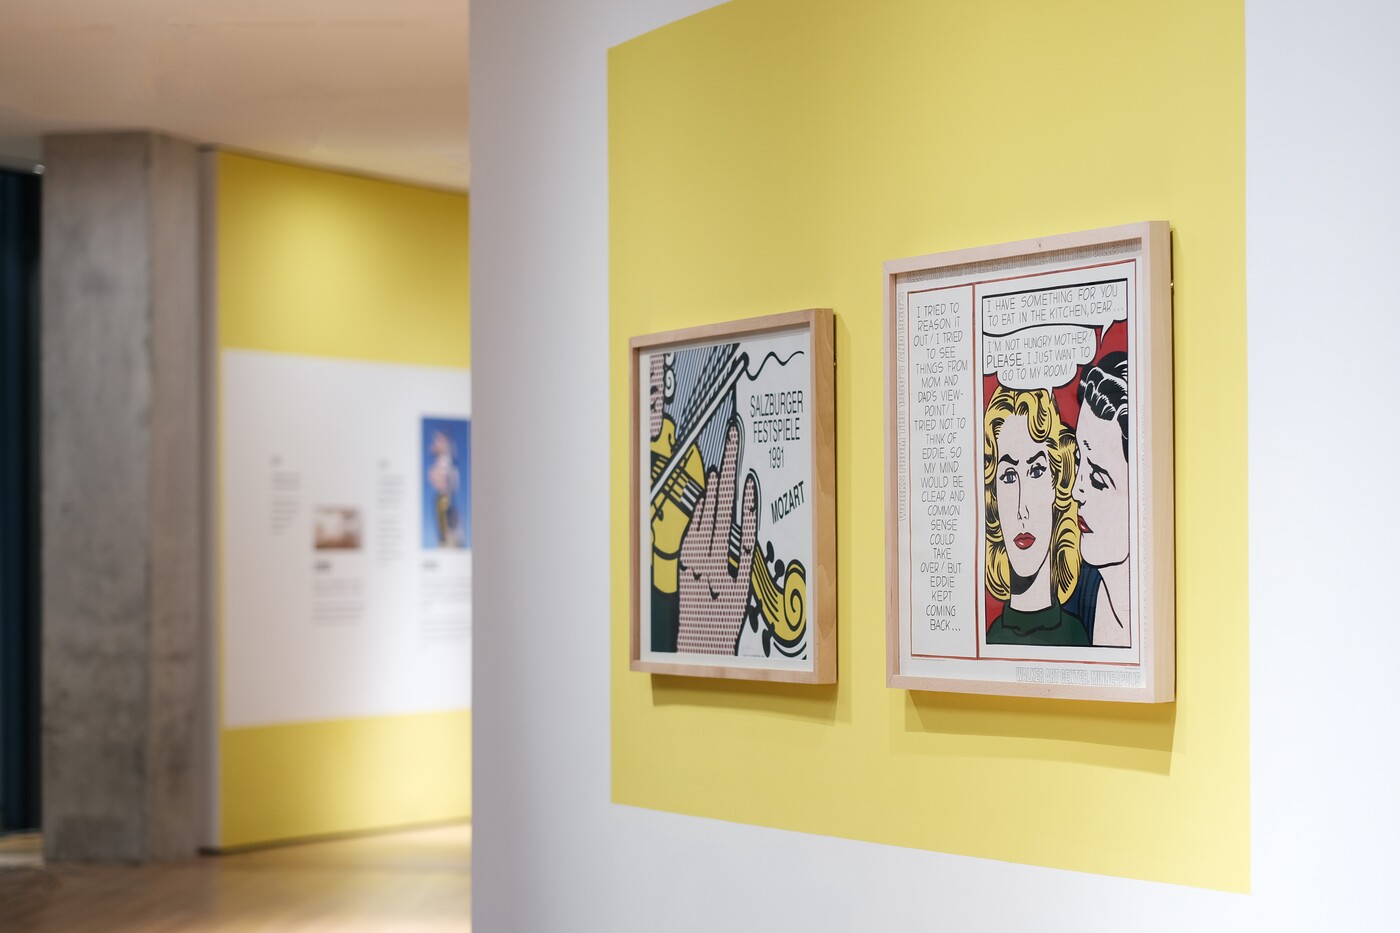 Left to right: Roy Lichtenstein, Salzburguer Festspiele, 1991, 65 x 86.5 cm. Eddie - Diptych, 1985, 78 x 91 cm. Installation view. Photo: Liu Xiangli. © HEM.